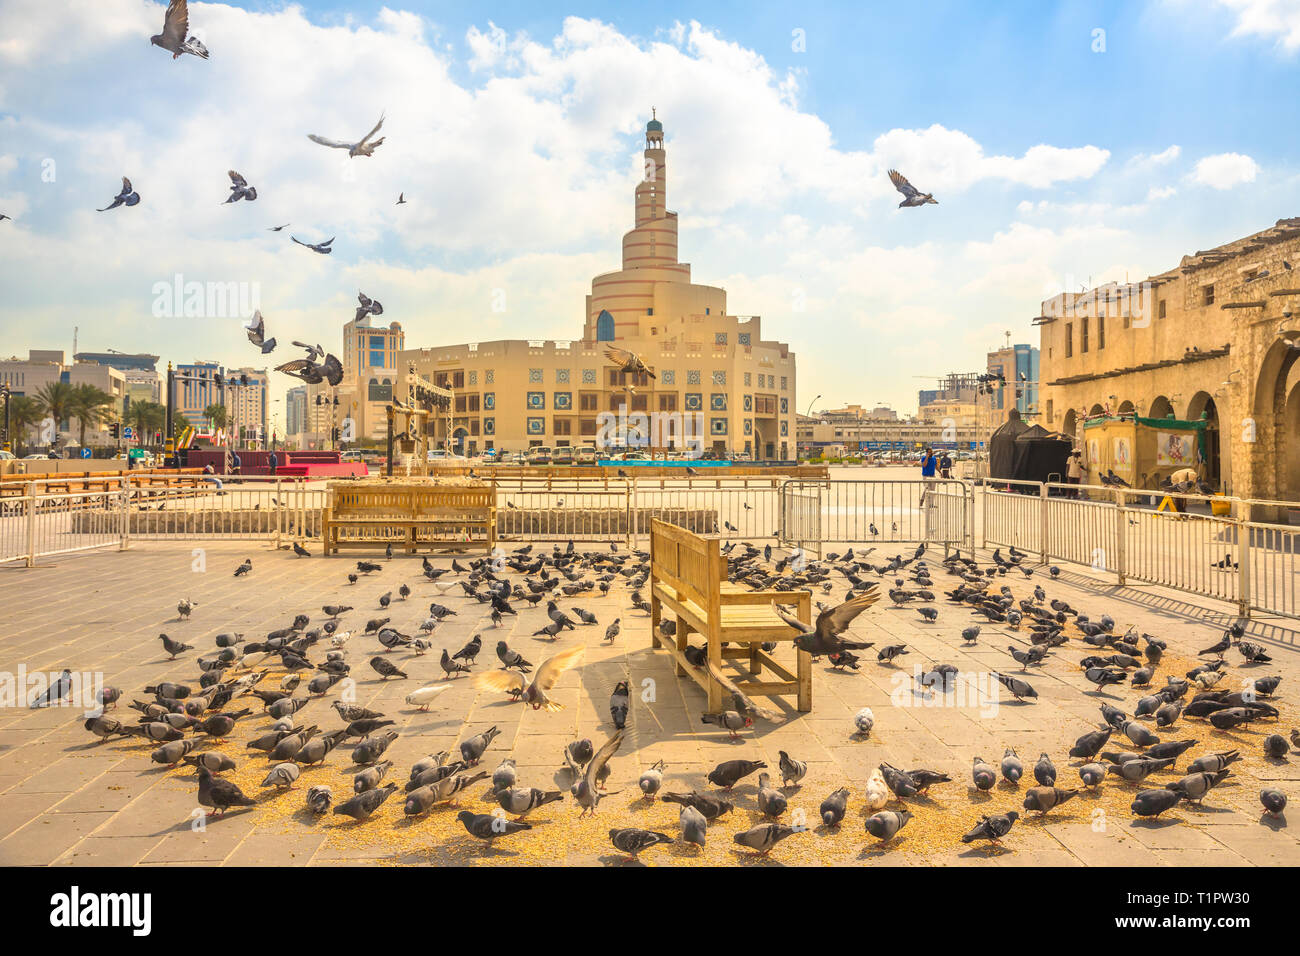 Doha, Qatar - 20 Febbraio 2019: Molti piccioni battenti nel Souq Waqif square. Medio Oriente, Penisola Arabica, Golfo Persico. Fanar Centro Culturale Islamico Foto Stock